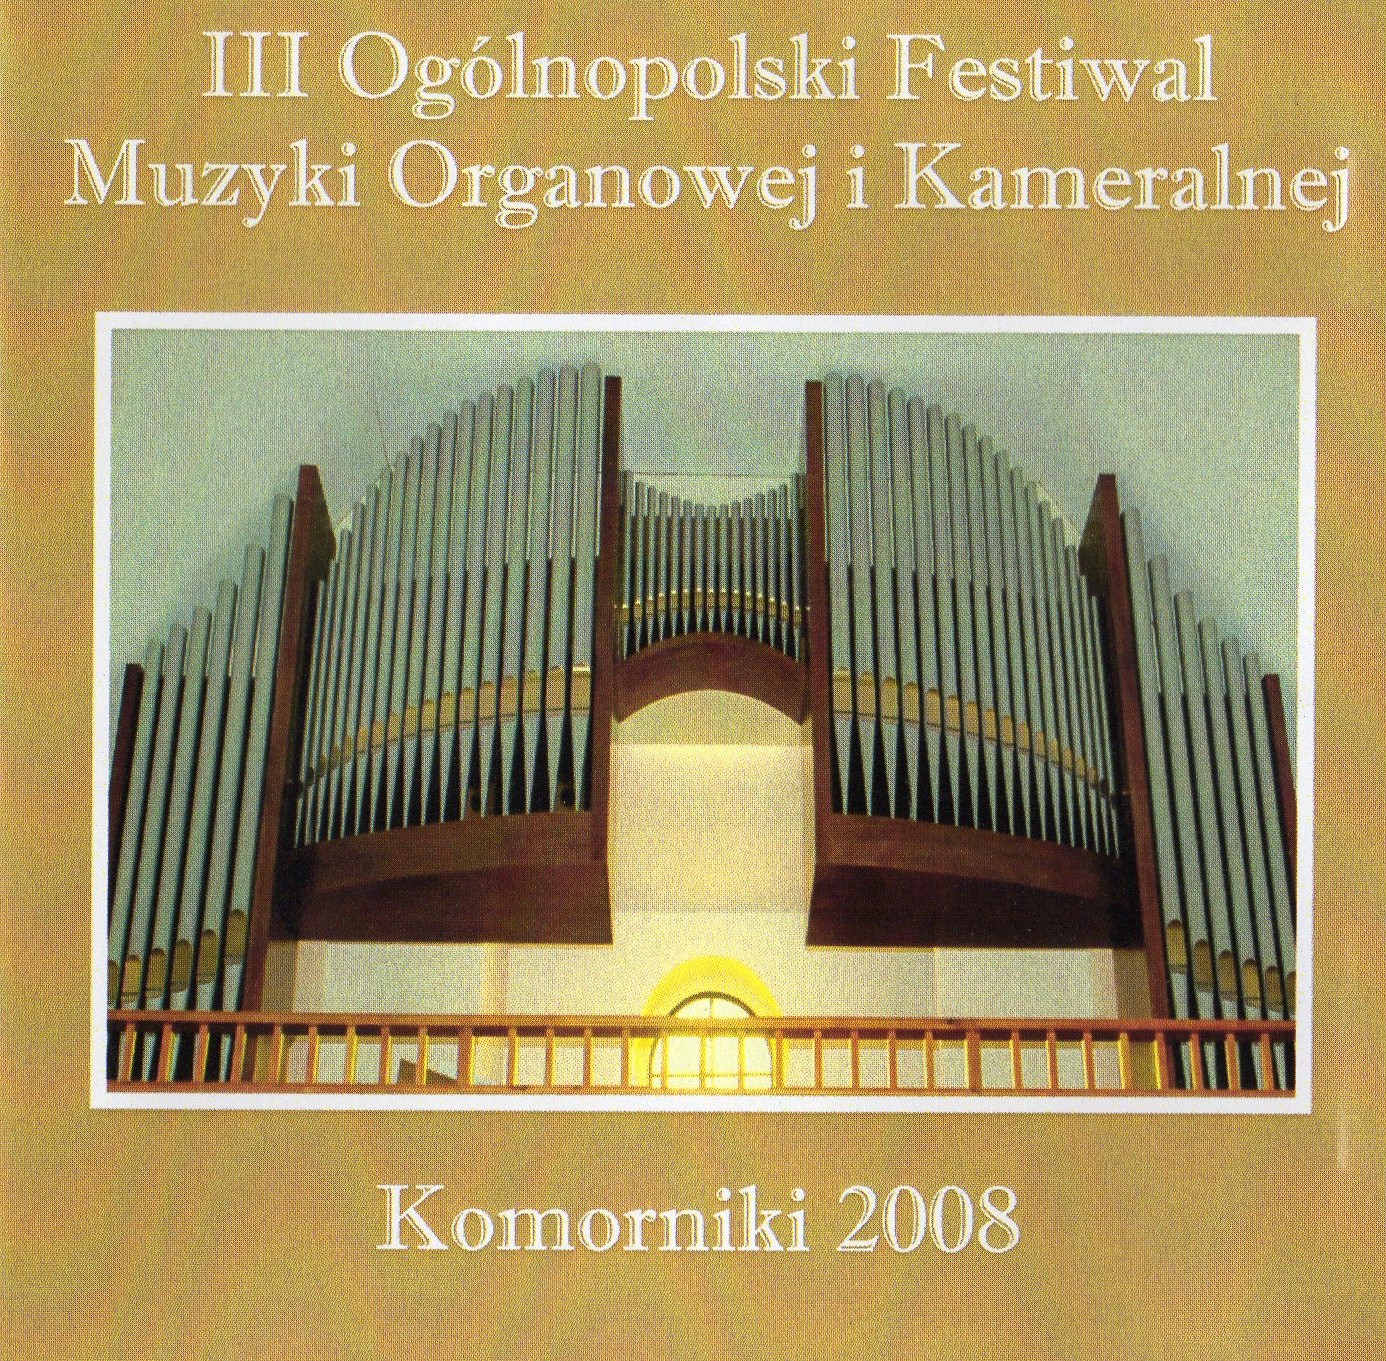 Komorniki 2008 - III Ogólnopolski Festiwal Muzyki Organowej i Kameralnej